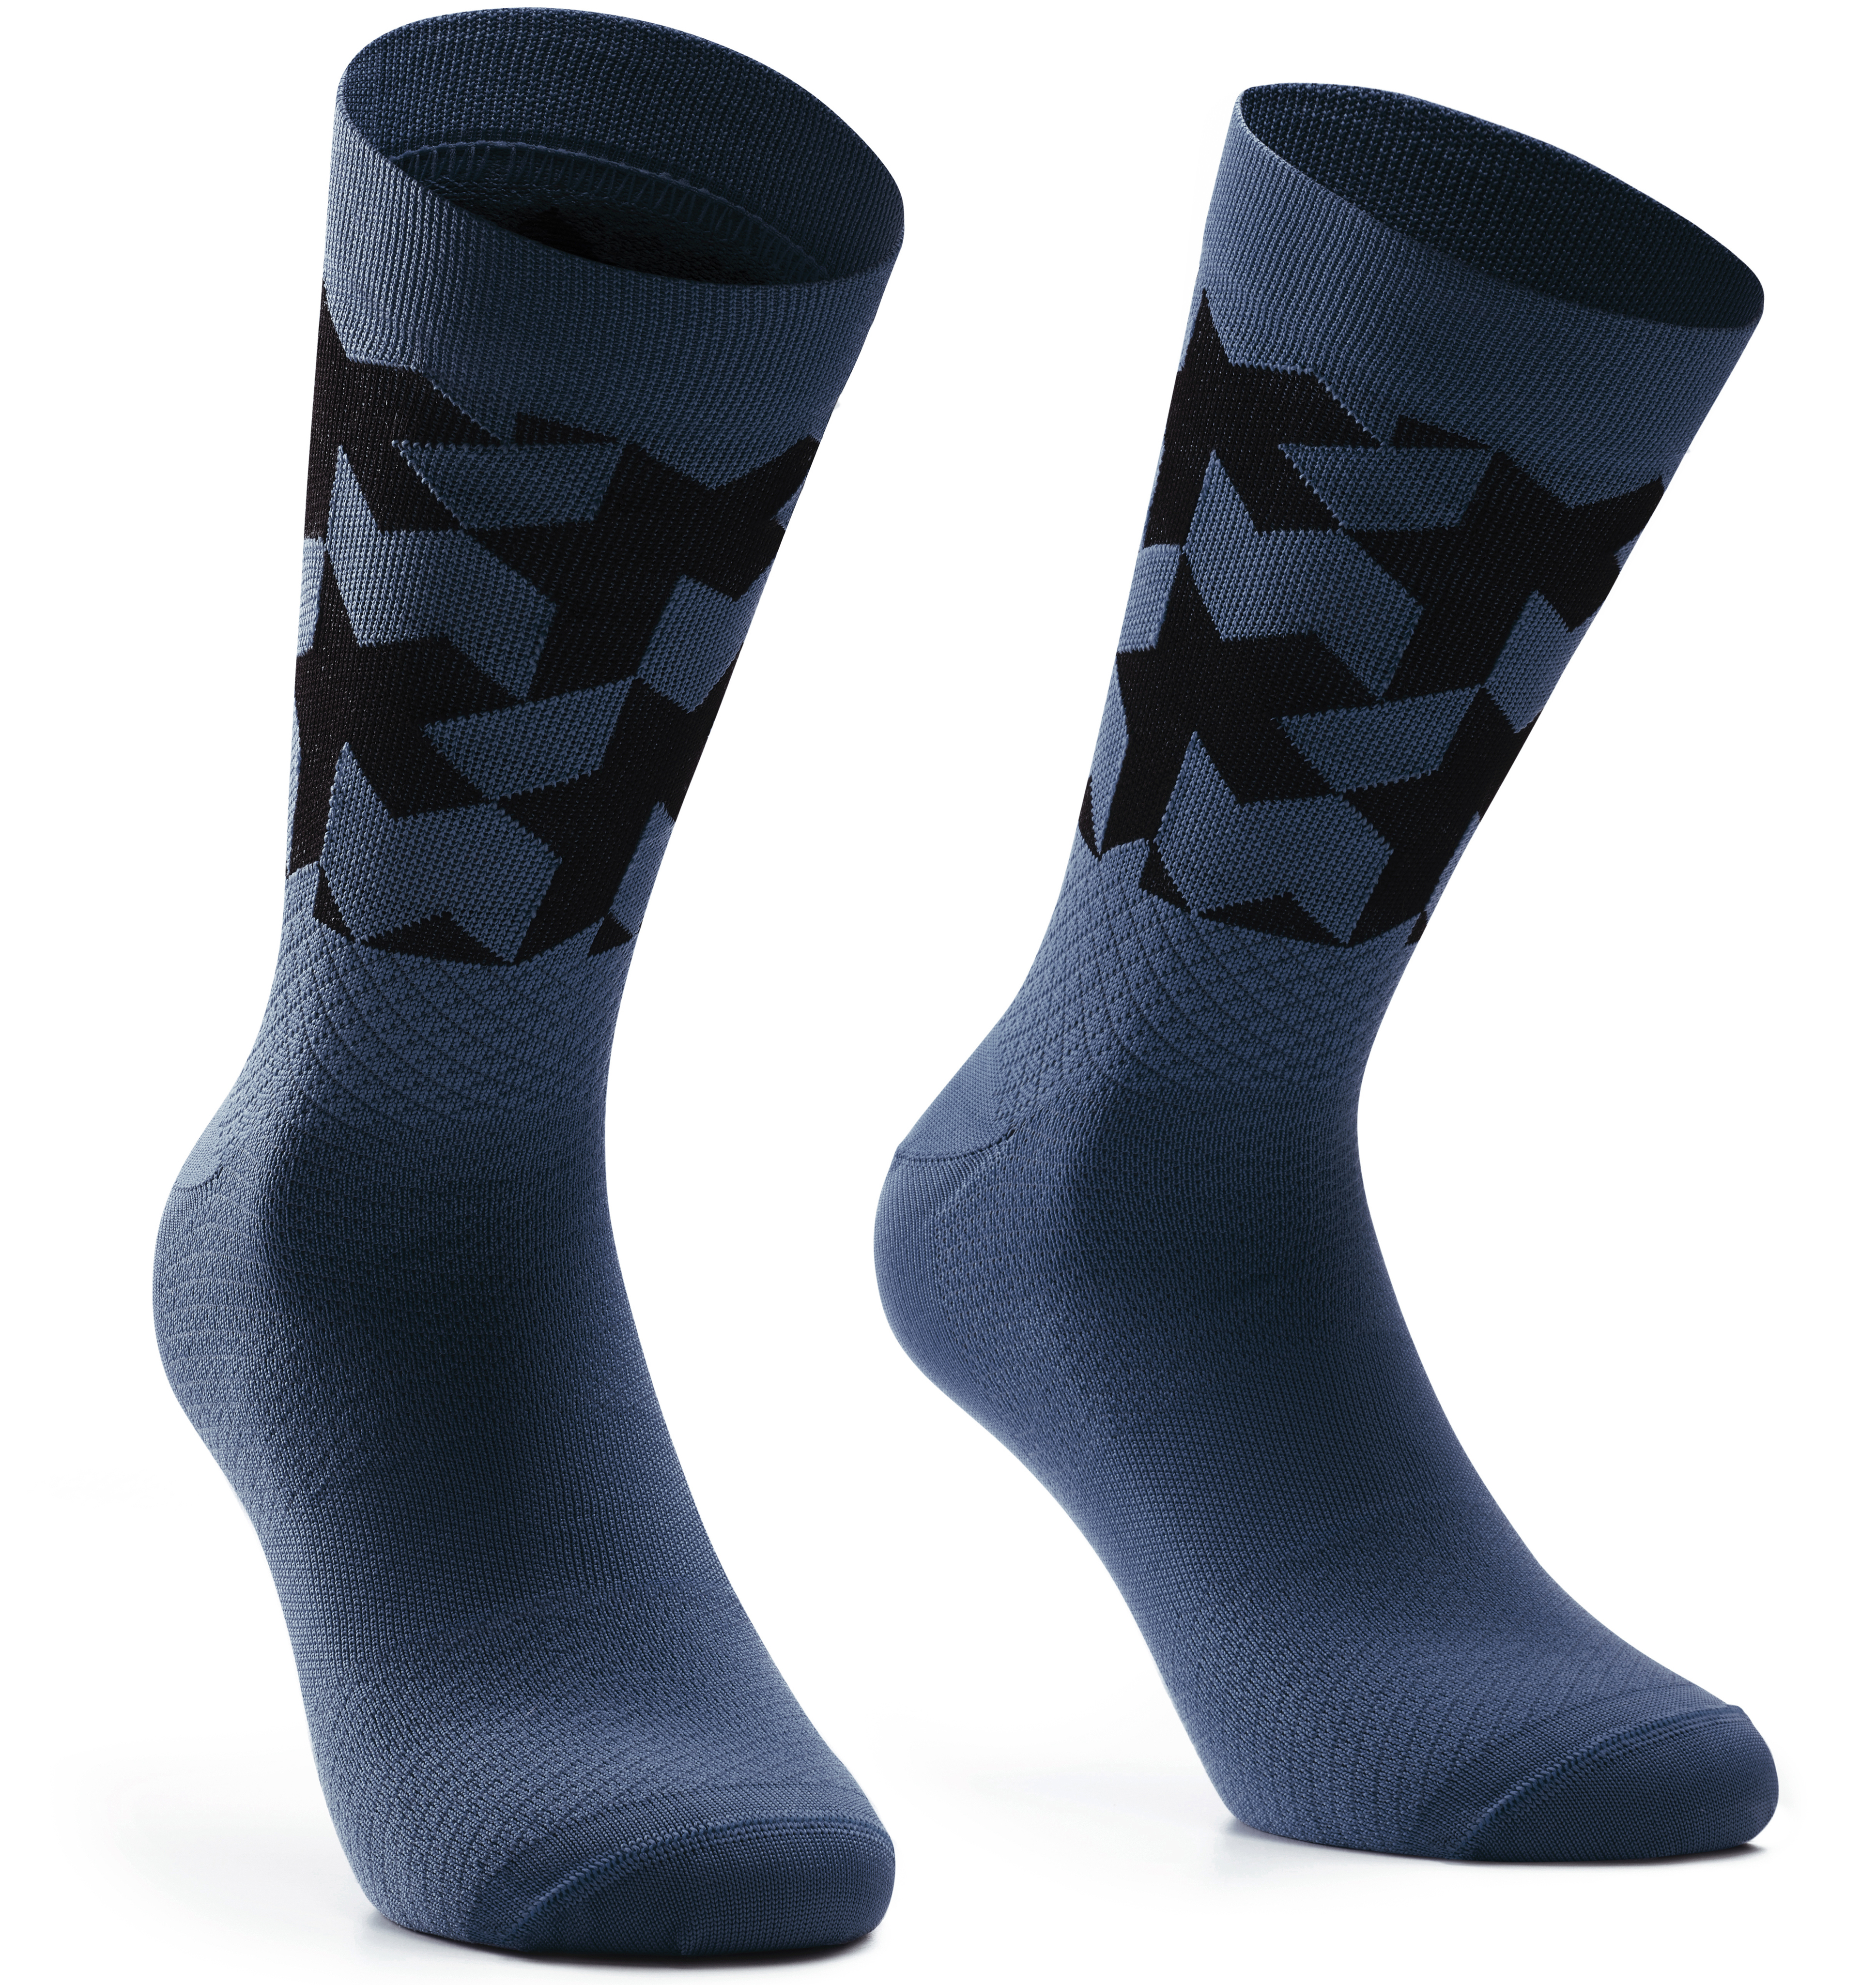 Шкарпетки ASSOS Monogram Socks Evo, чоловічі, синьо-чорні, II/43-46